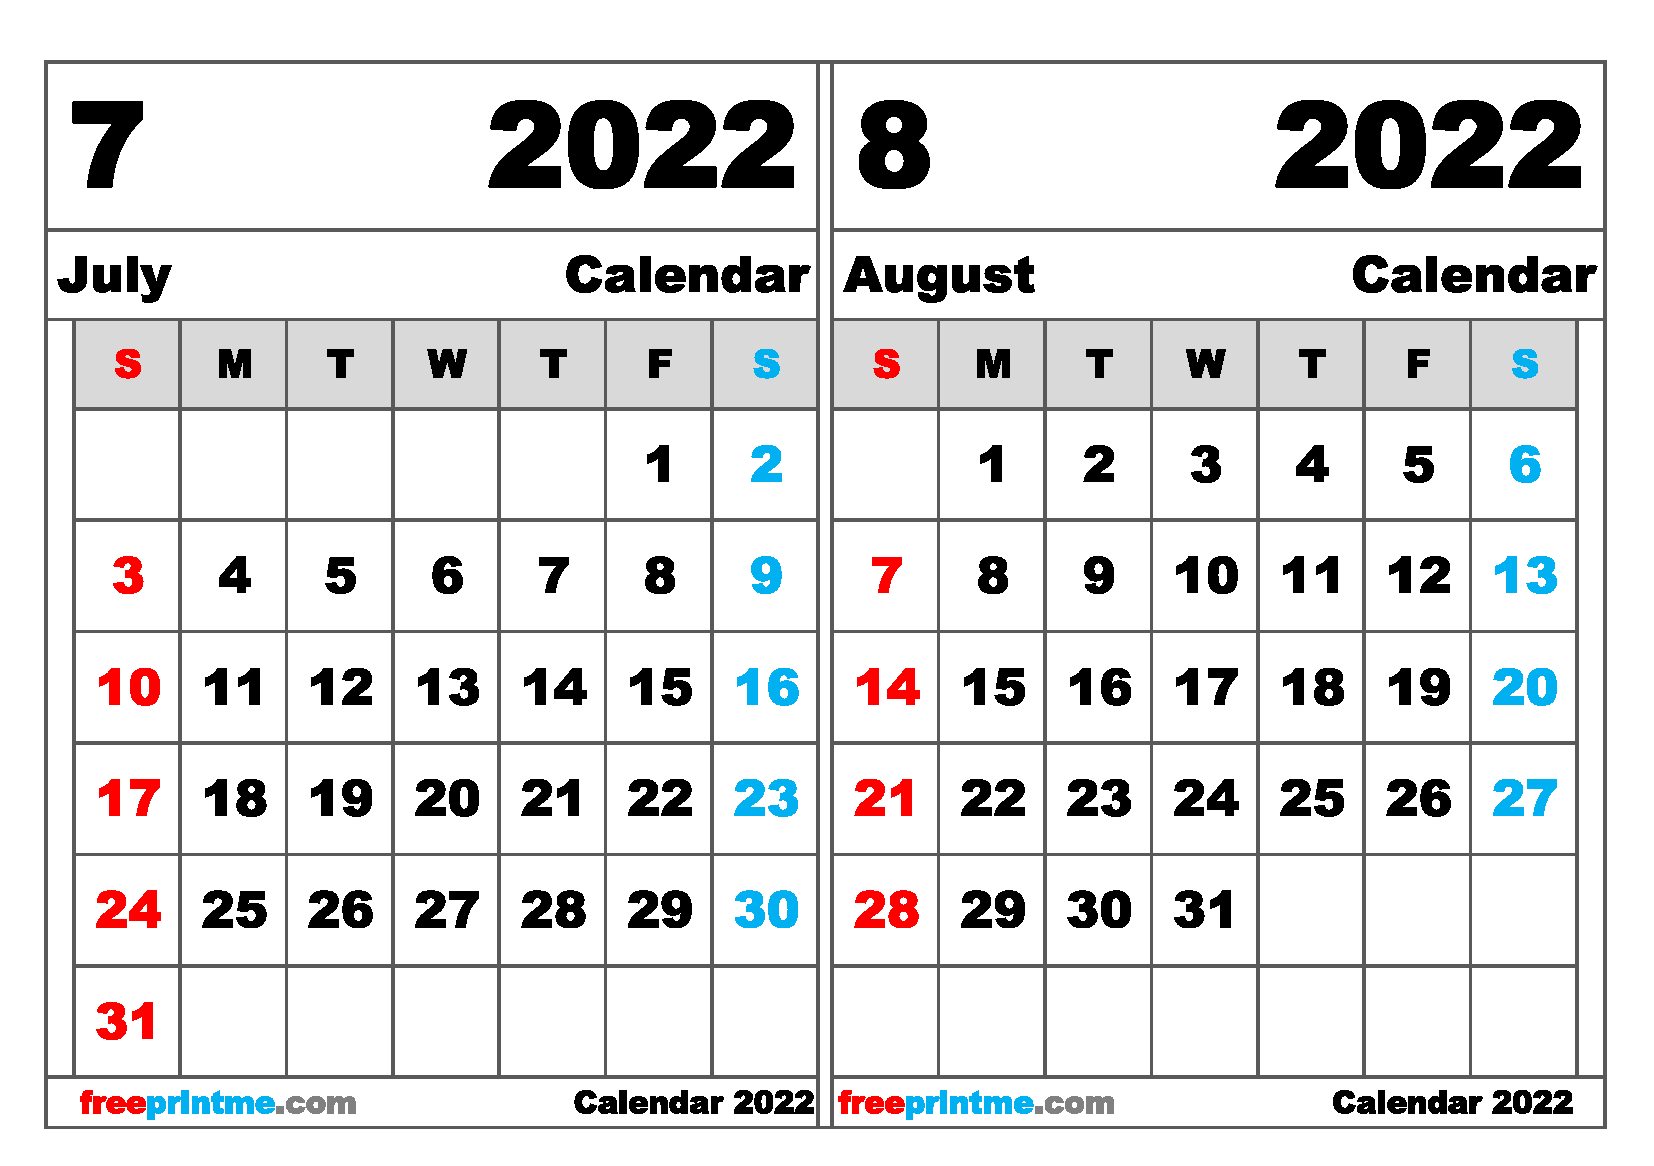 Get How Many Months Until November 1 2022